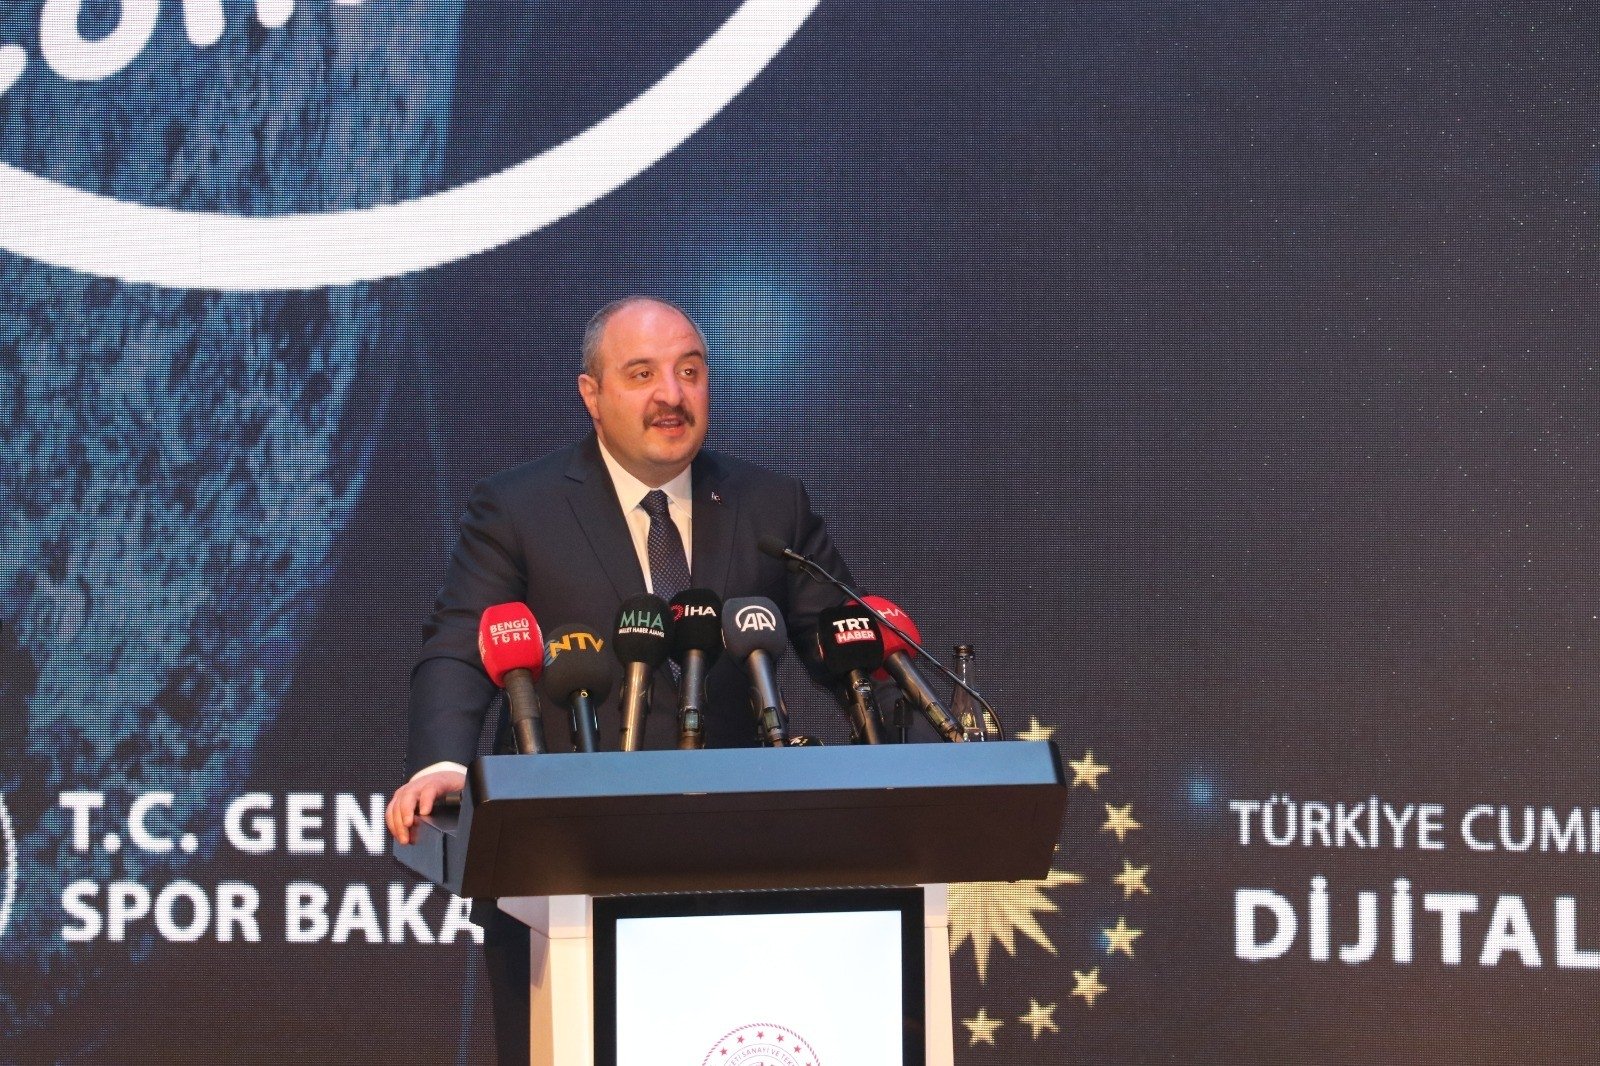 Technology and Industry Minister Mustafa Varank speaks at the Youth Informatics Festival, Ankara, Turkey, May 16, 2022. (IHA Photo)